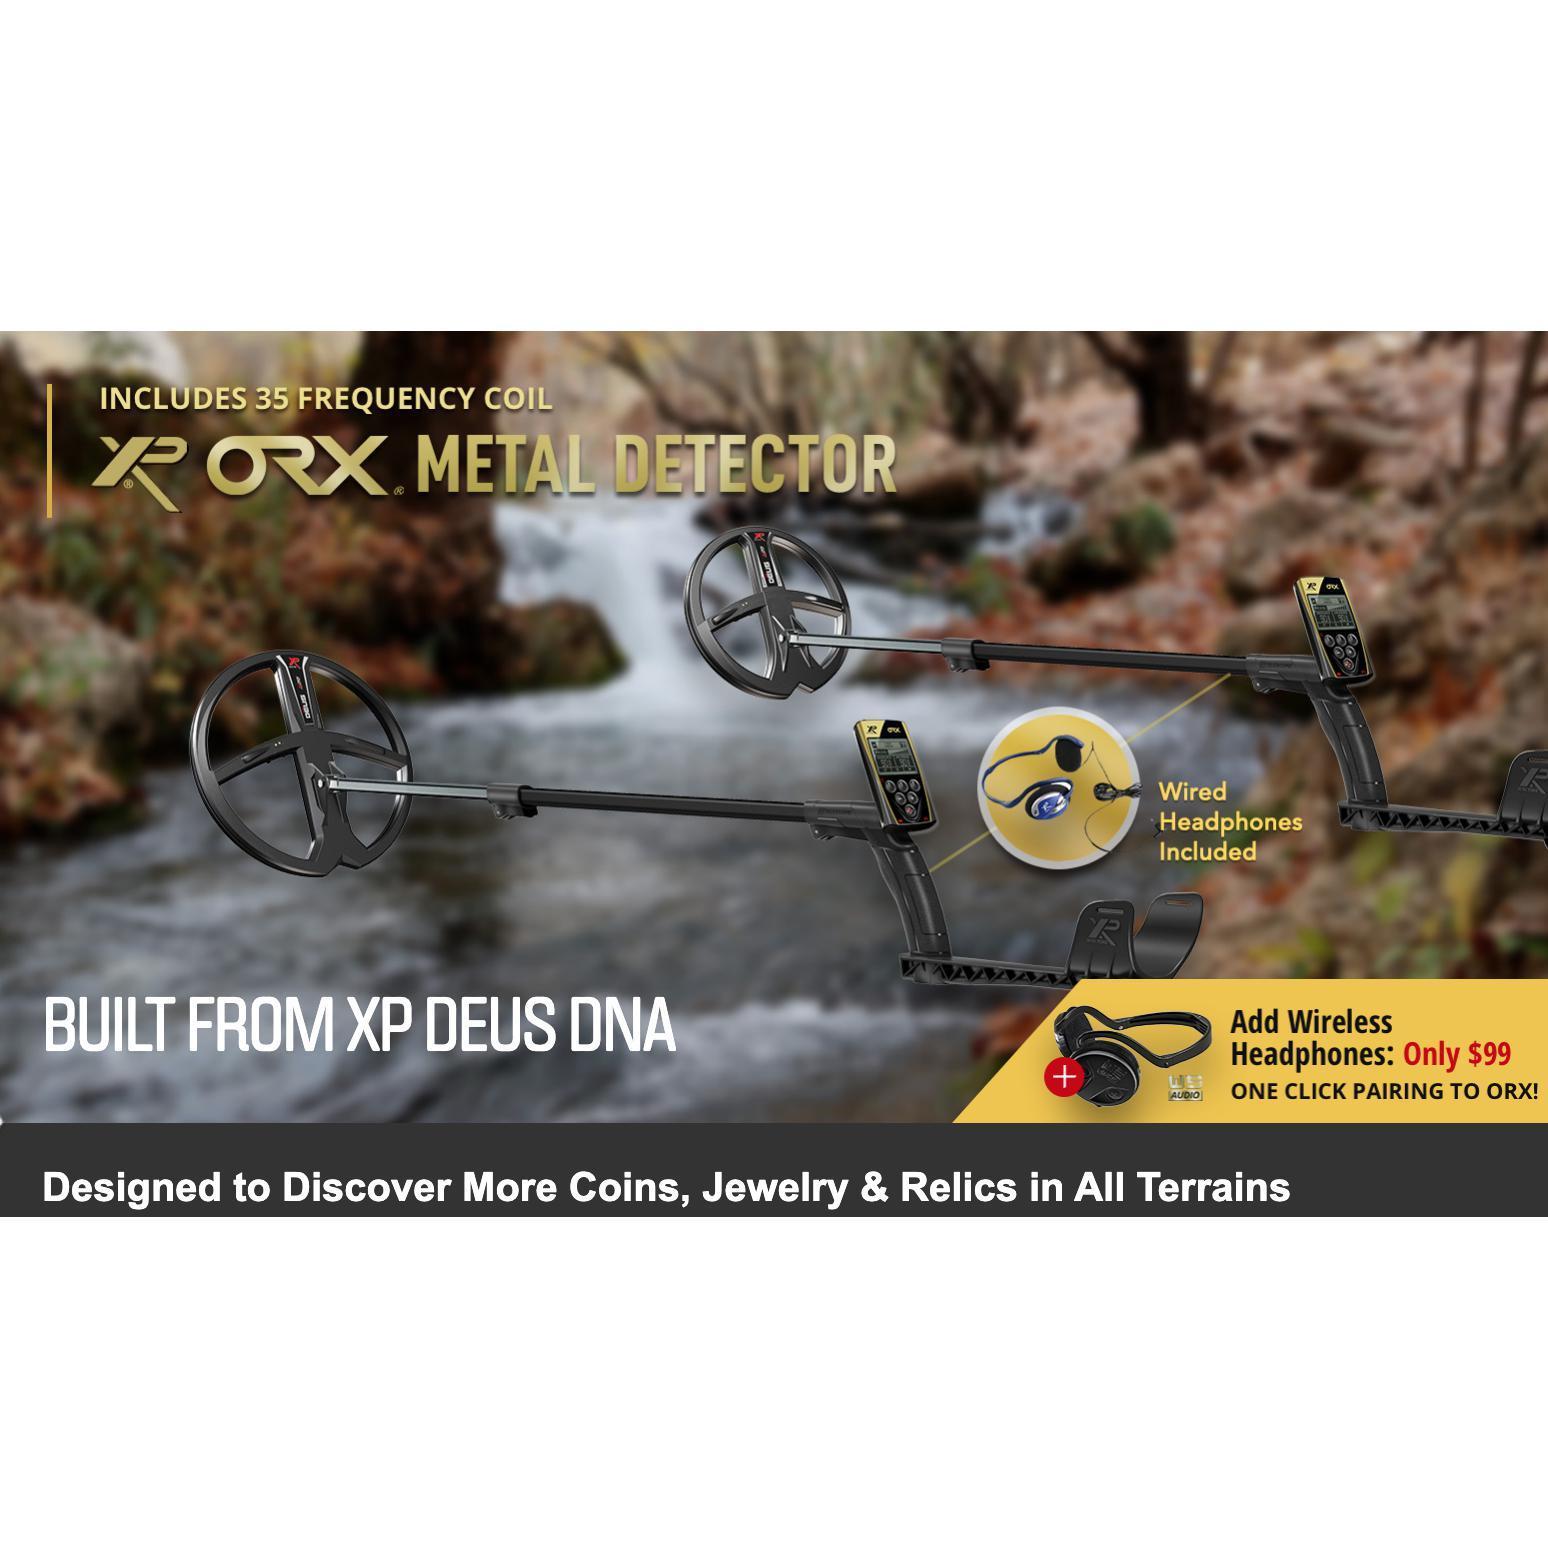 XP ORX Metal Detector 9" X35 Coil & RC-Destination Gold Detectors